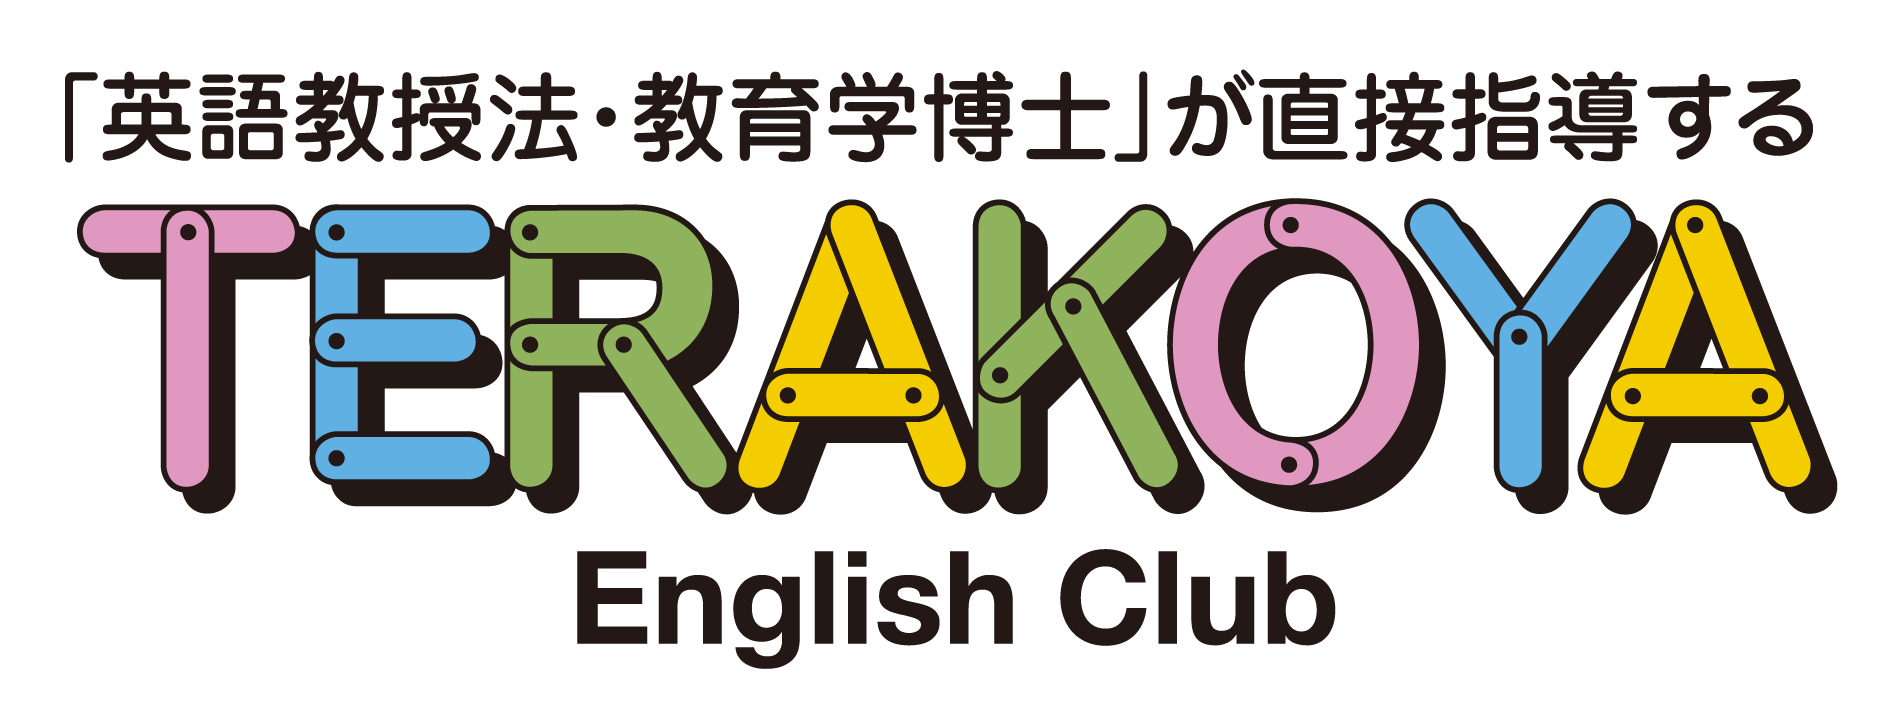 英語寺子屋 English Club